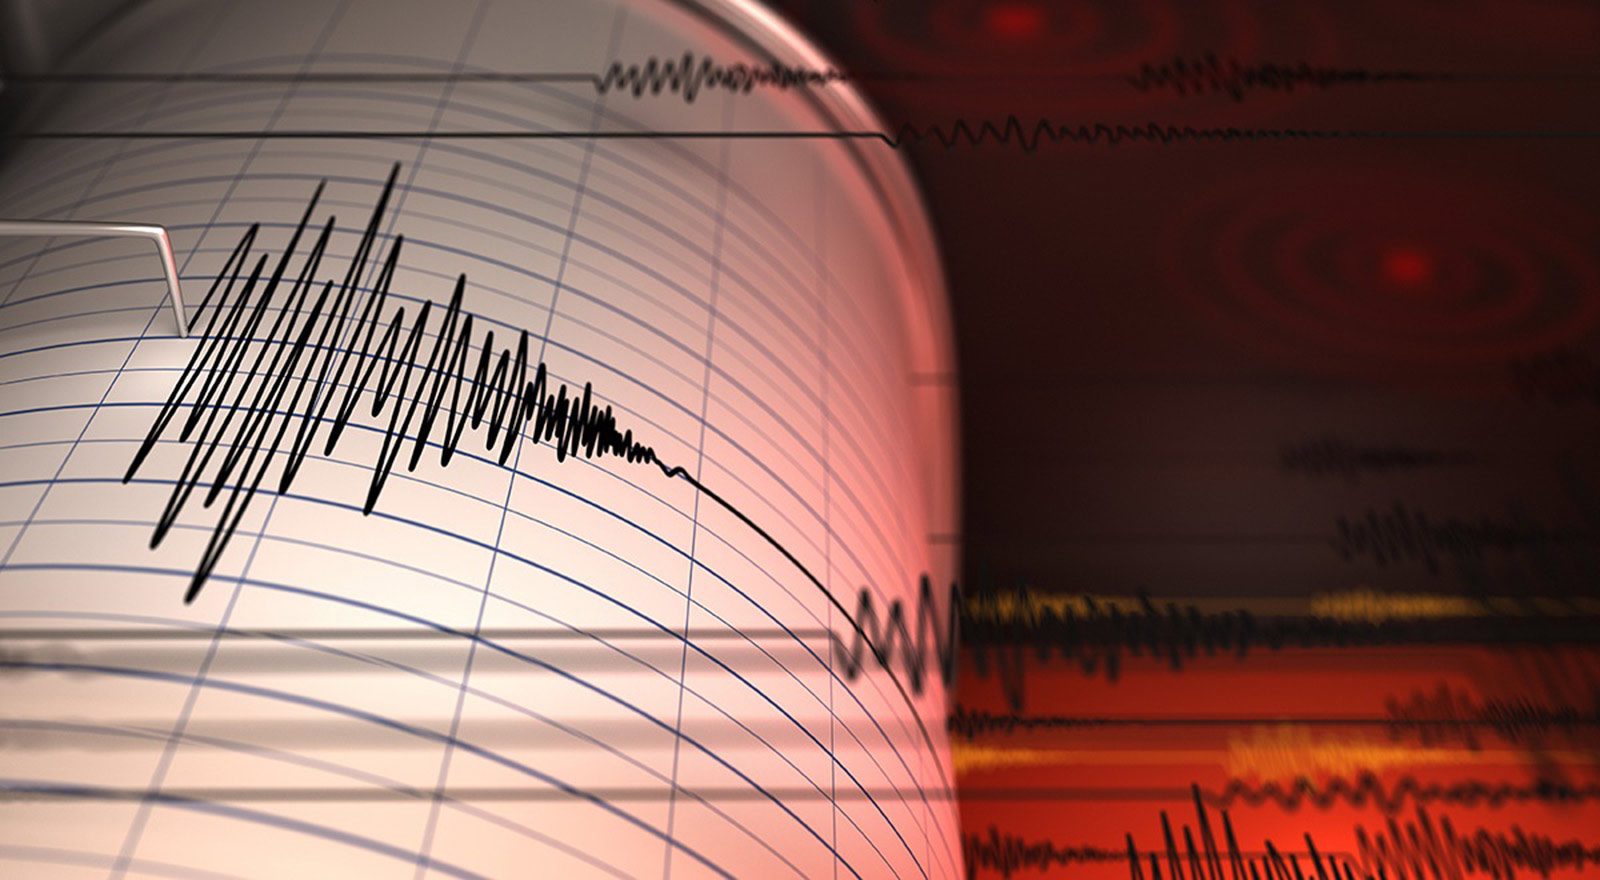 زلزال بقوة 5.4 درجات يضرب جزر كيرماديك فى نيوزيلندا